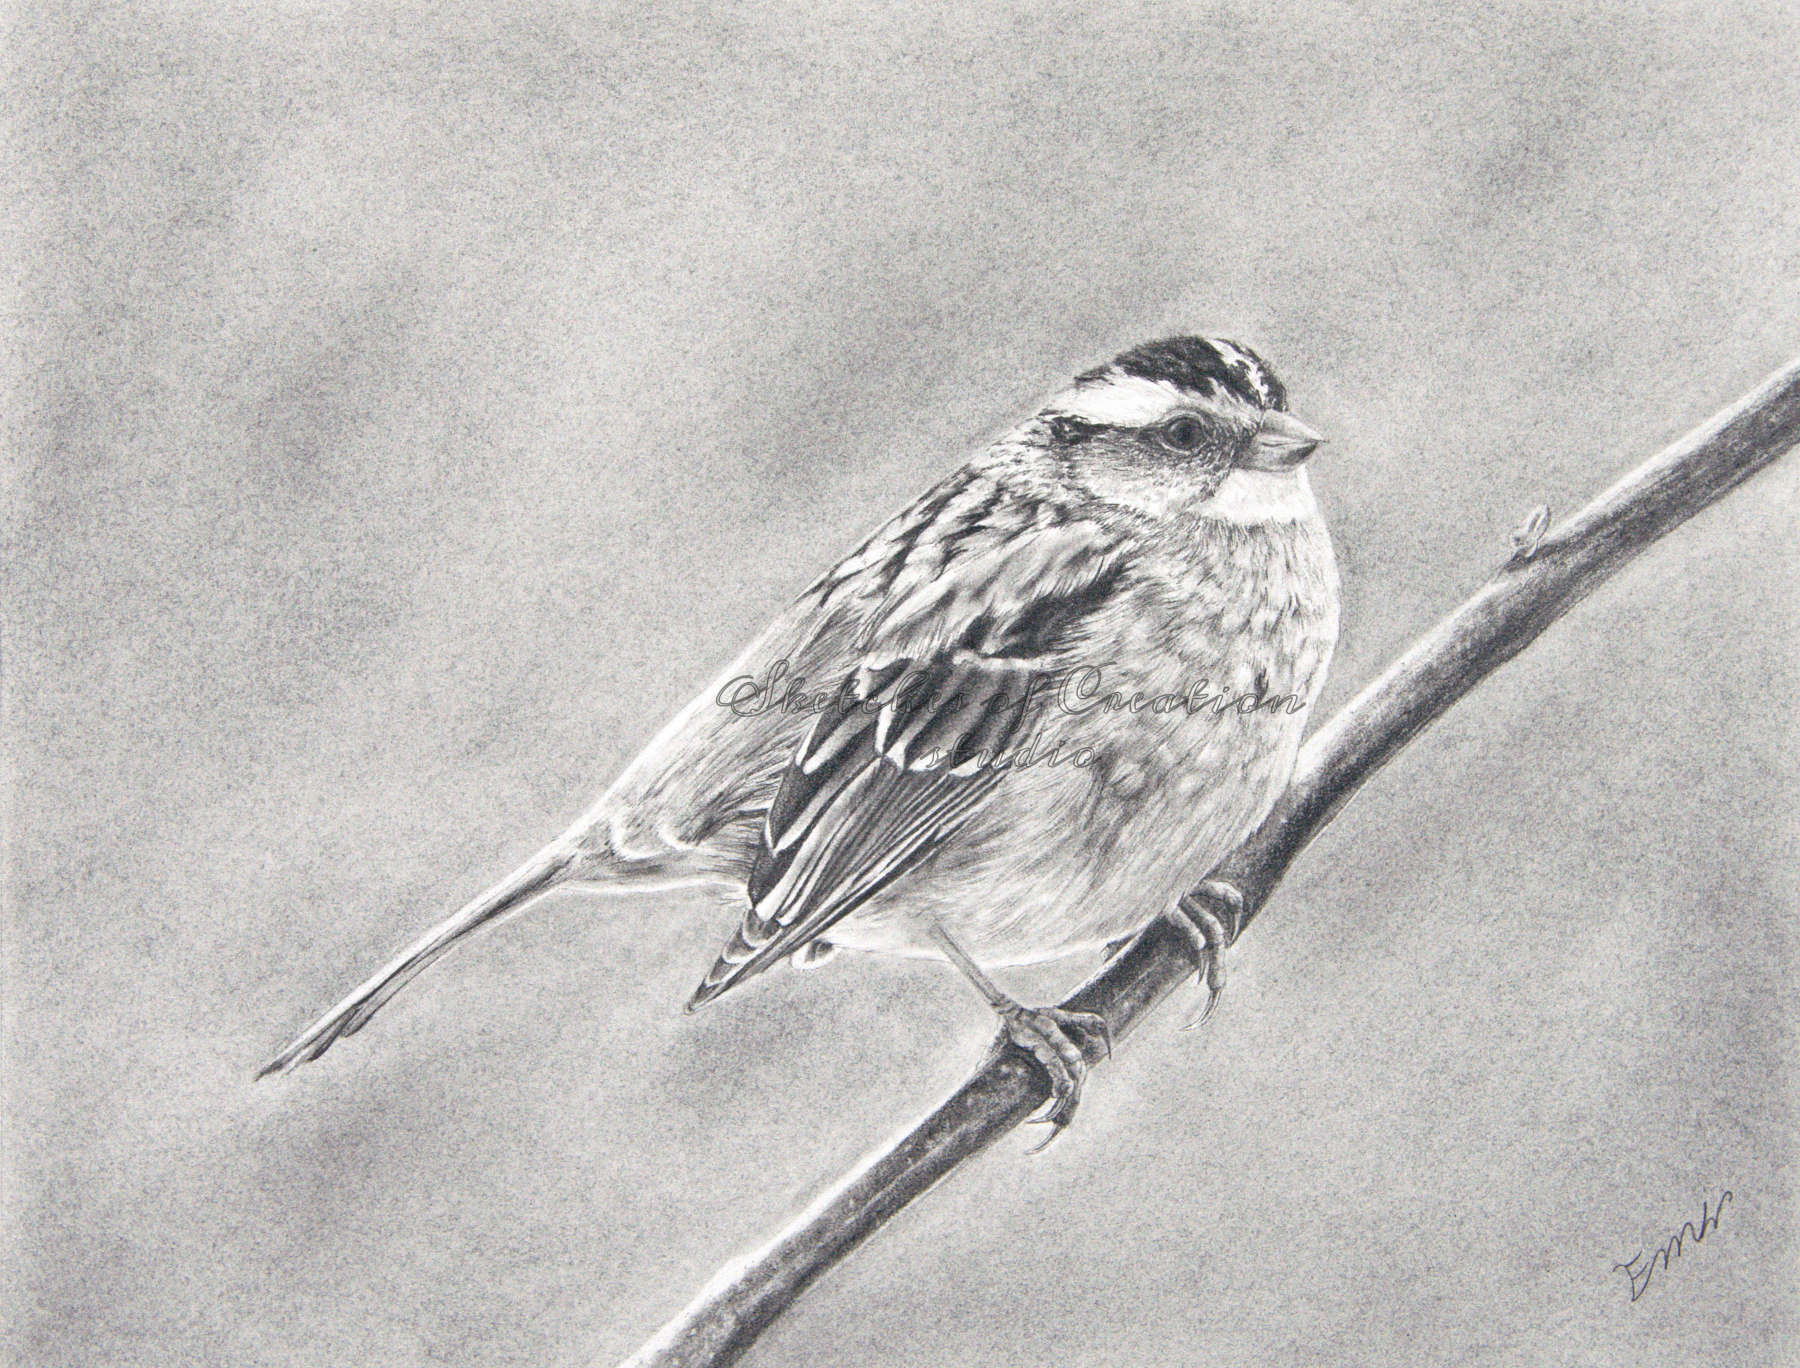 'Sparrow' a sparrow on a branch